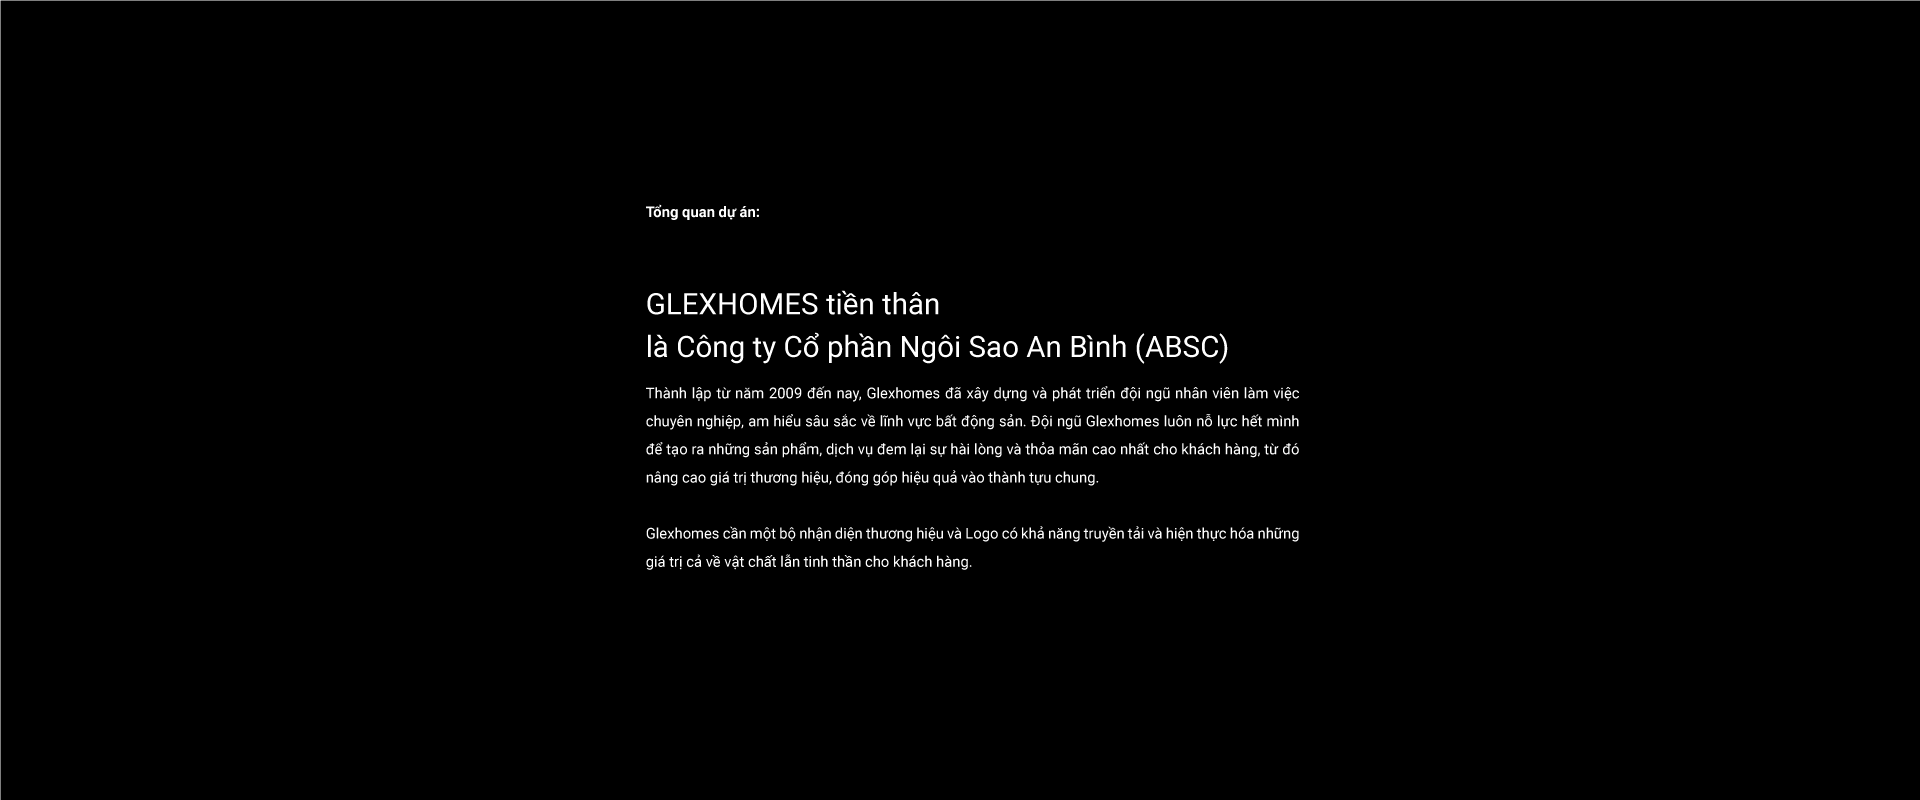 Dự án thiết kế thương hiệu Glexhomes - 6